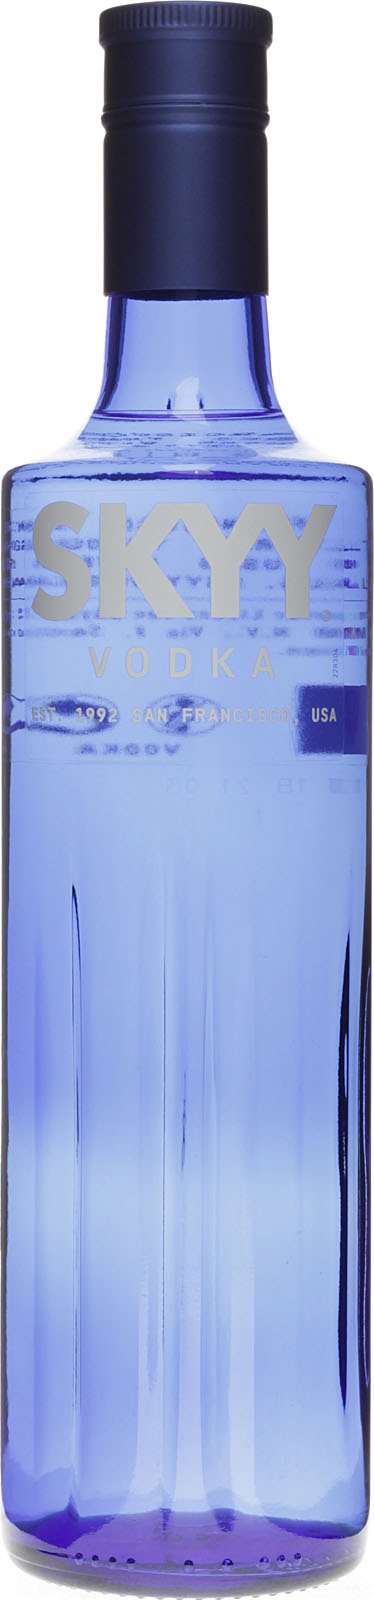 Vodka Blue Skyy bei online kaufen günstig